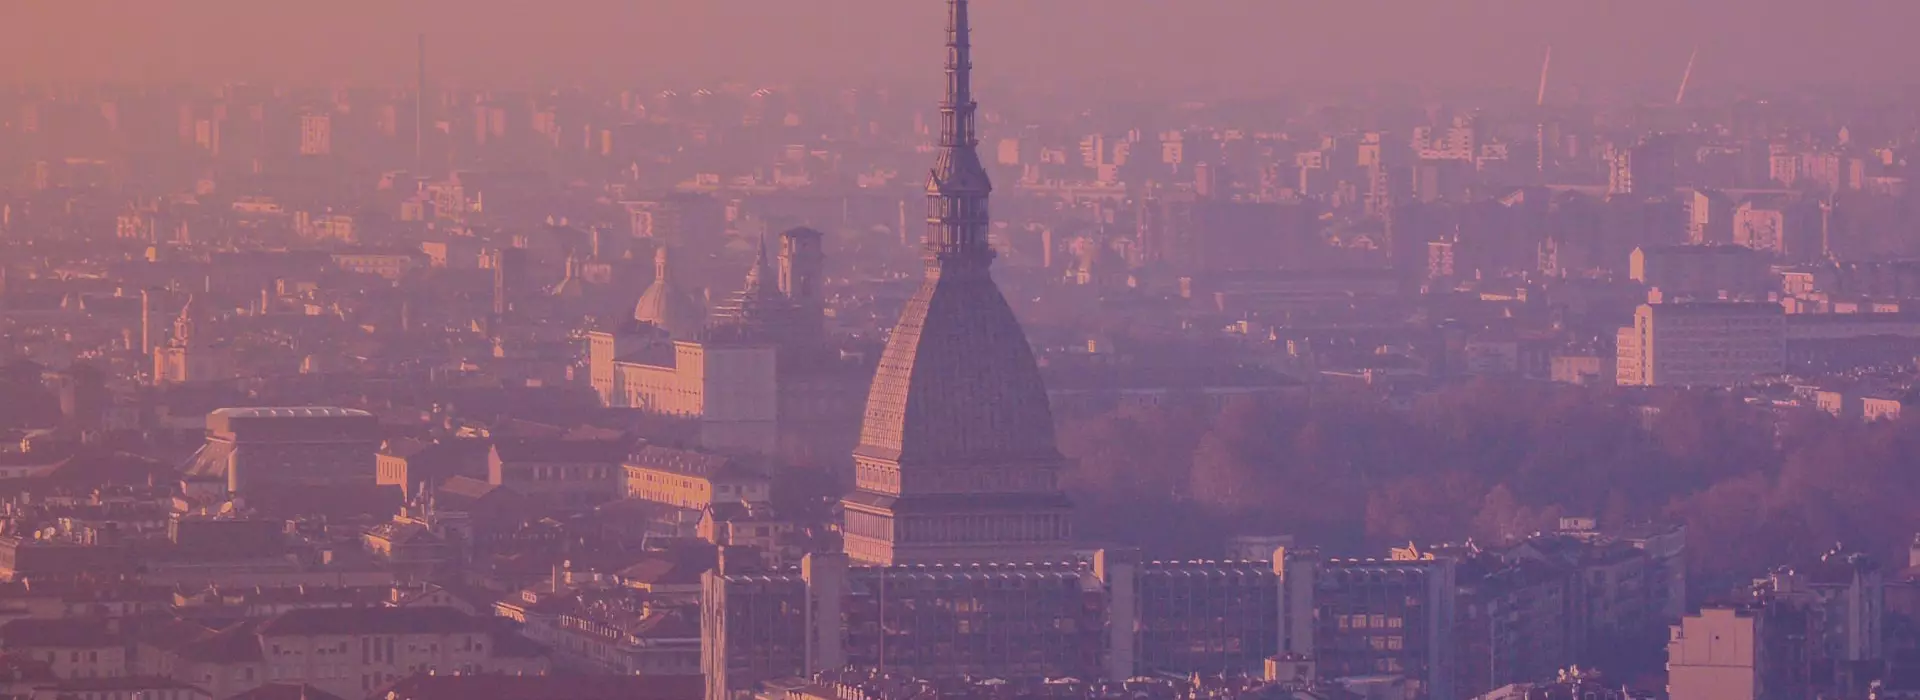 Città di Torino con la mole Antonelliana in primo piano al tramonto per l'articolo tour torino boeris